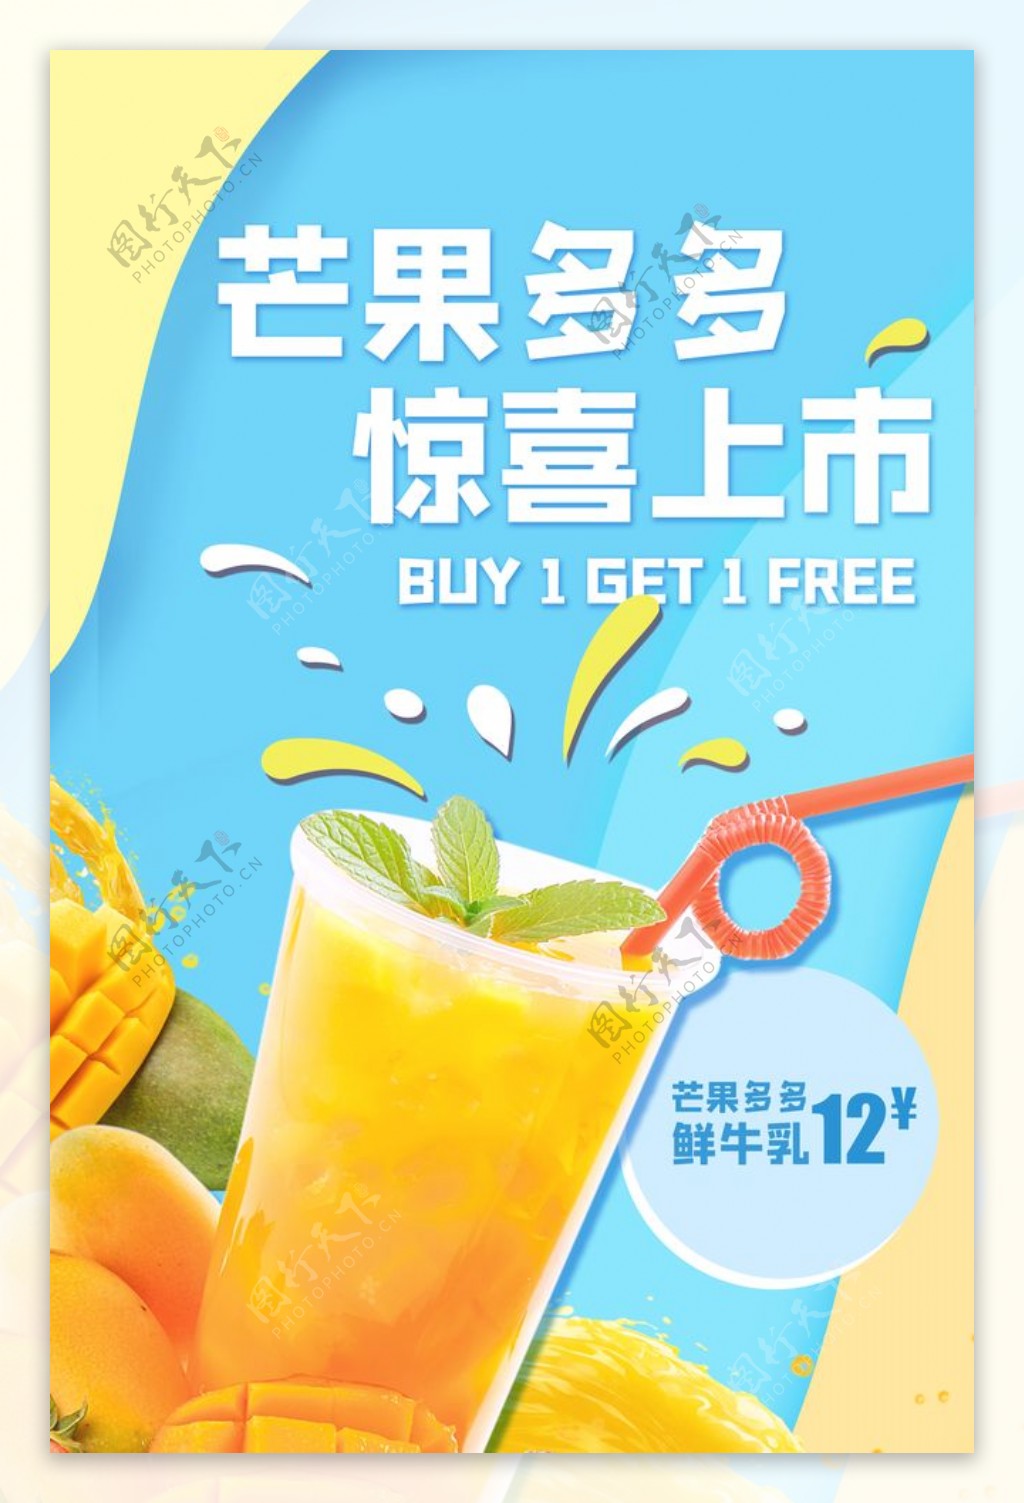 芒果汁饮品活动宣传海报素材